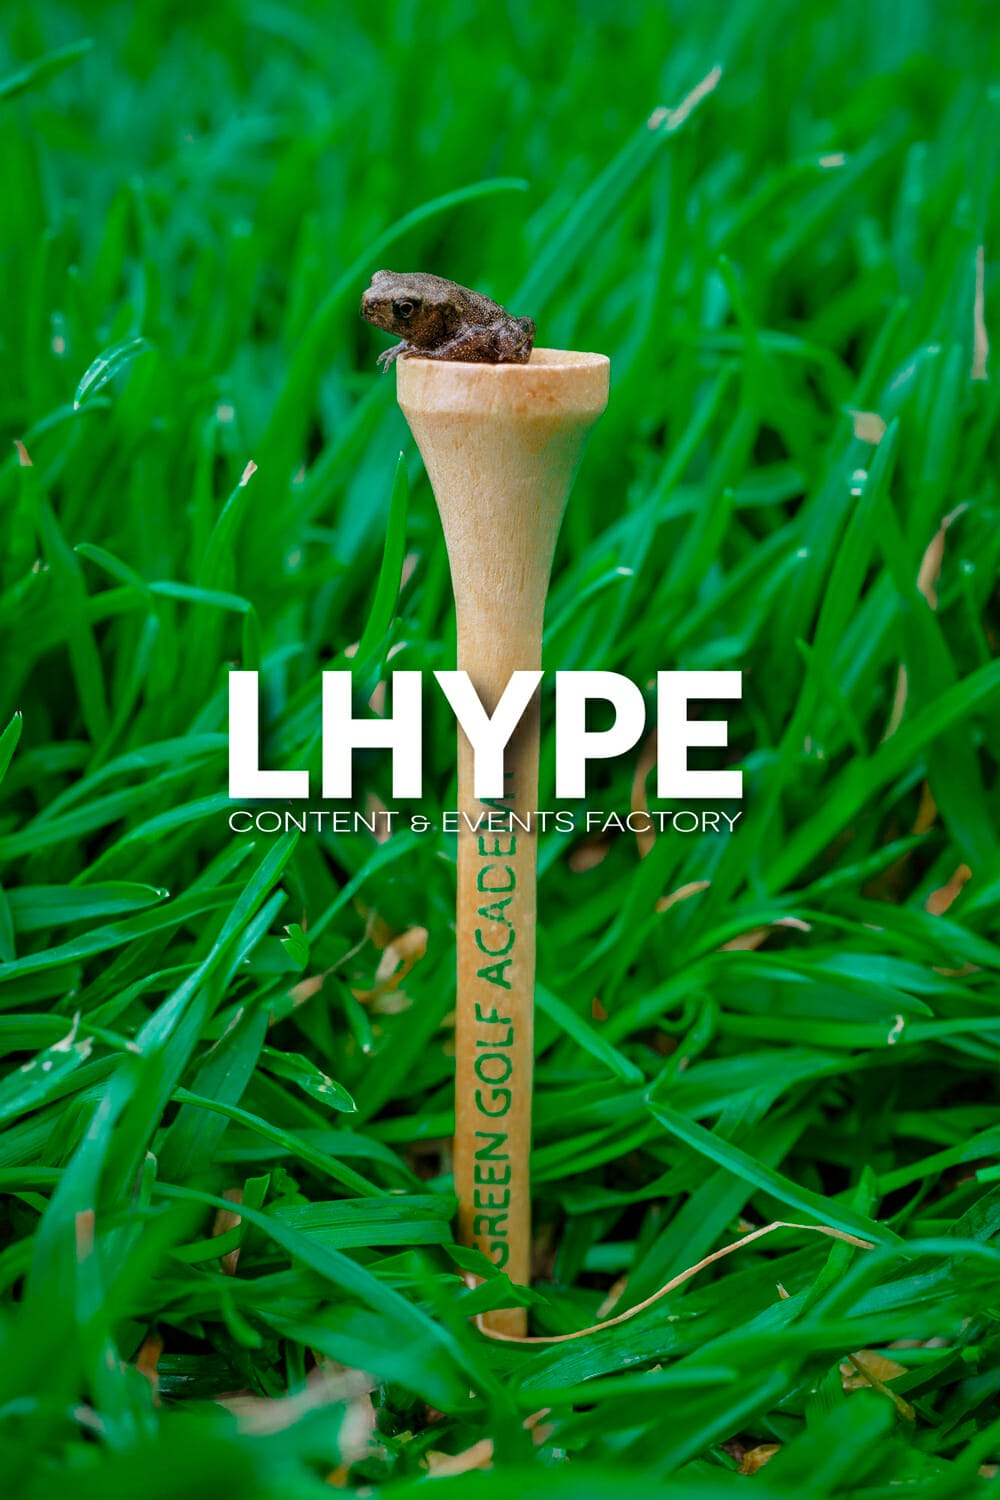 (c) Lhype.com